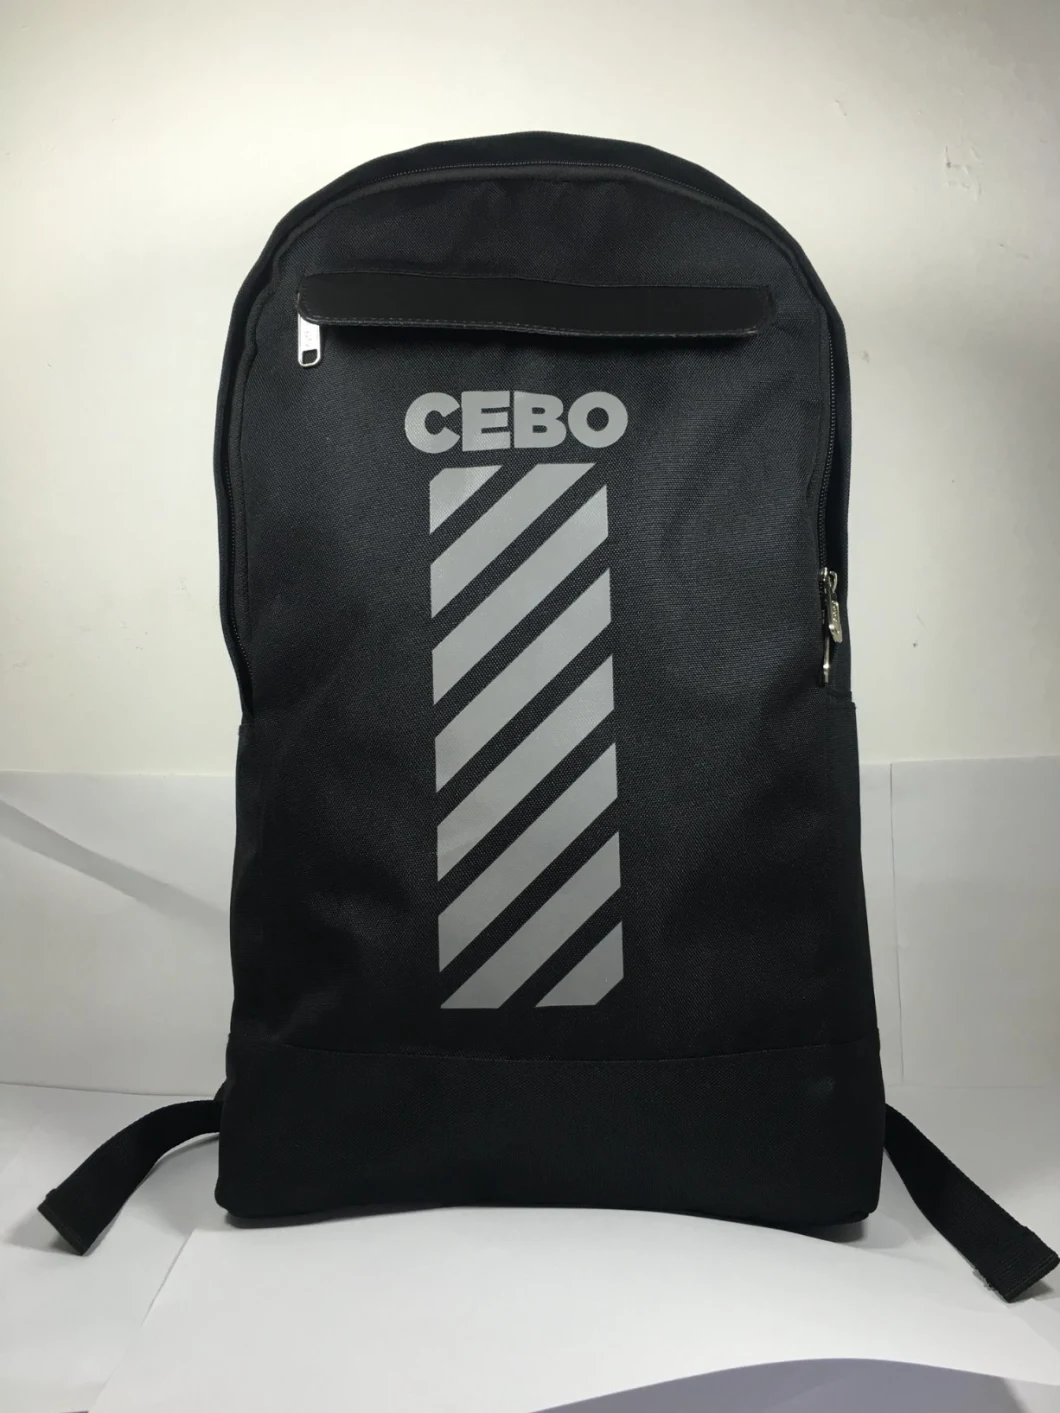 High Quality Backpack, Hot Sale Custom Back Pack, Fashion Canvas Backpack Bag High Quality Backpack